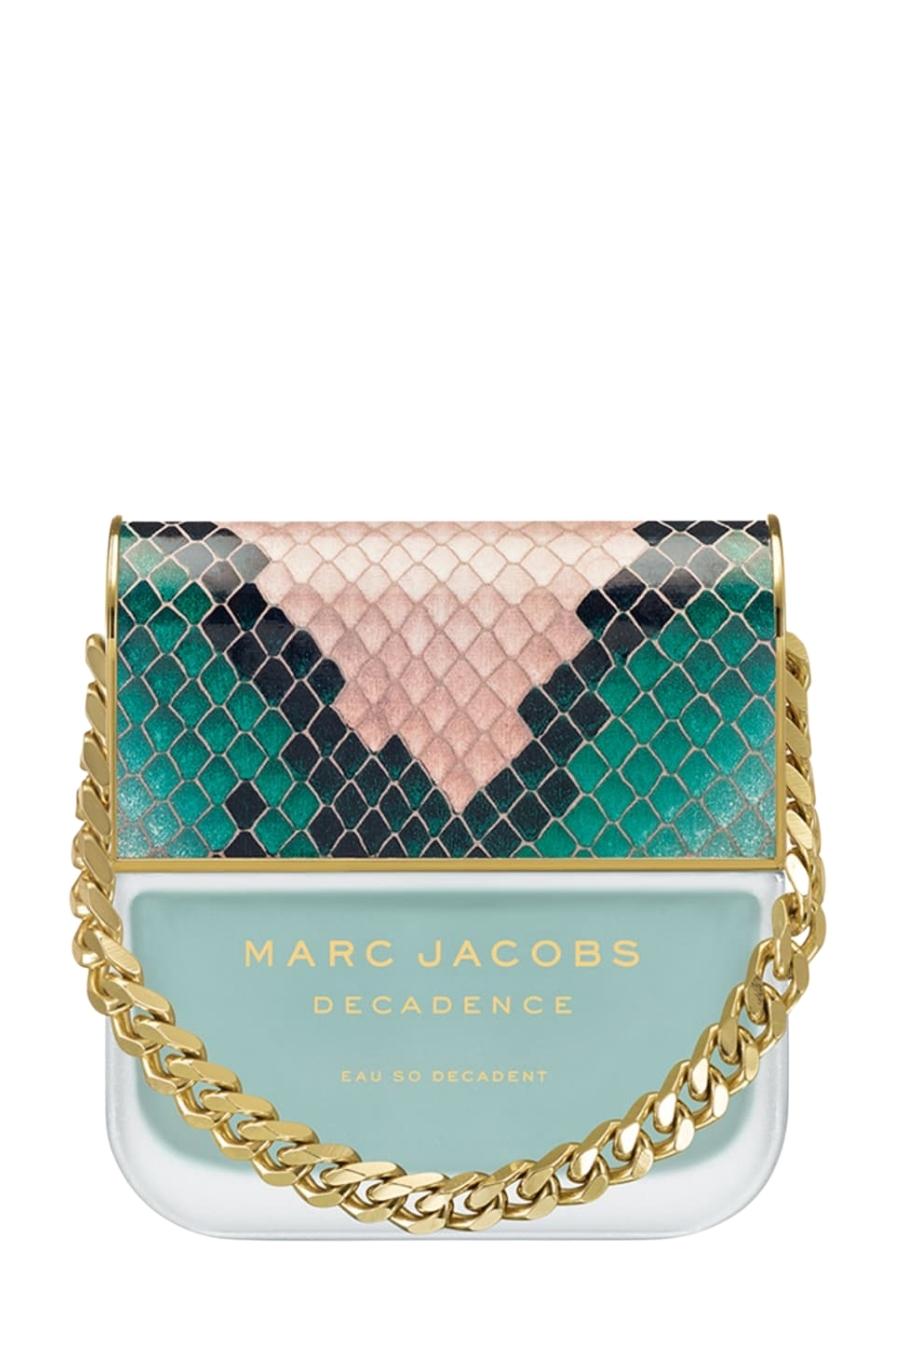 Marc Jacobs | Decadence Eau So Decadent Eau de Toilette